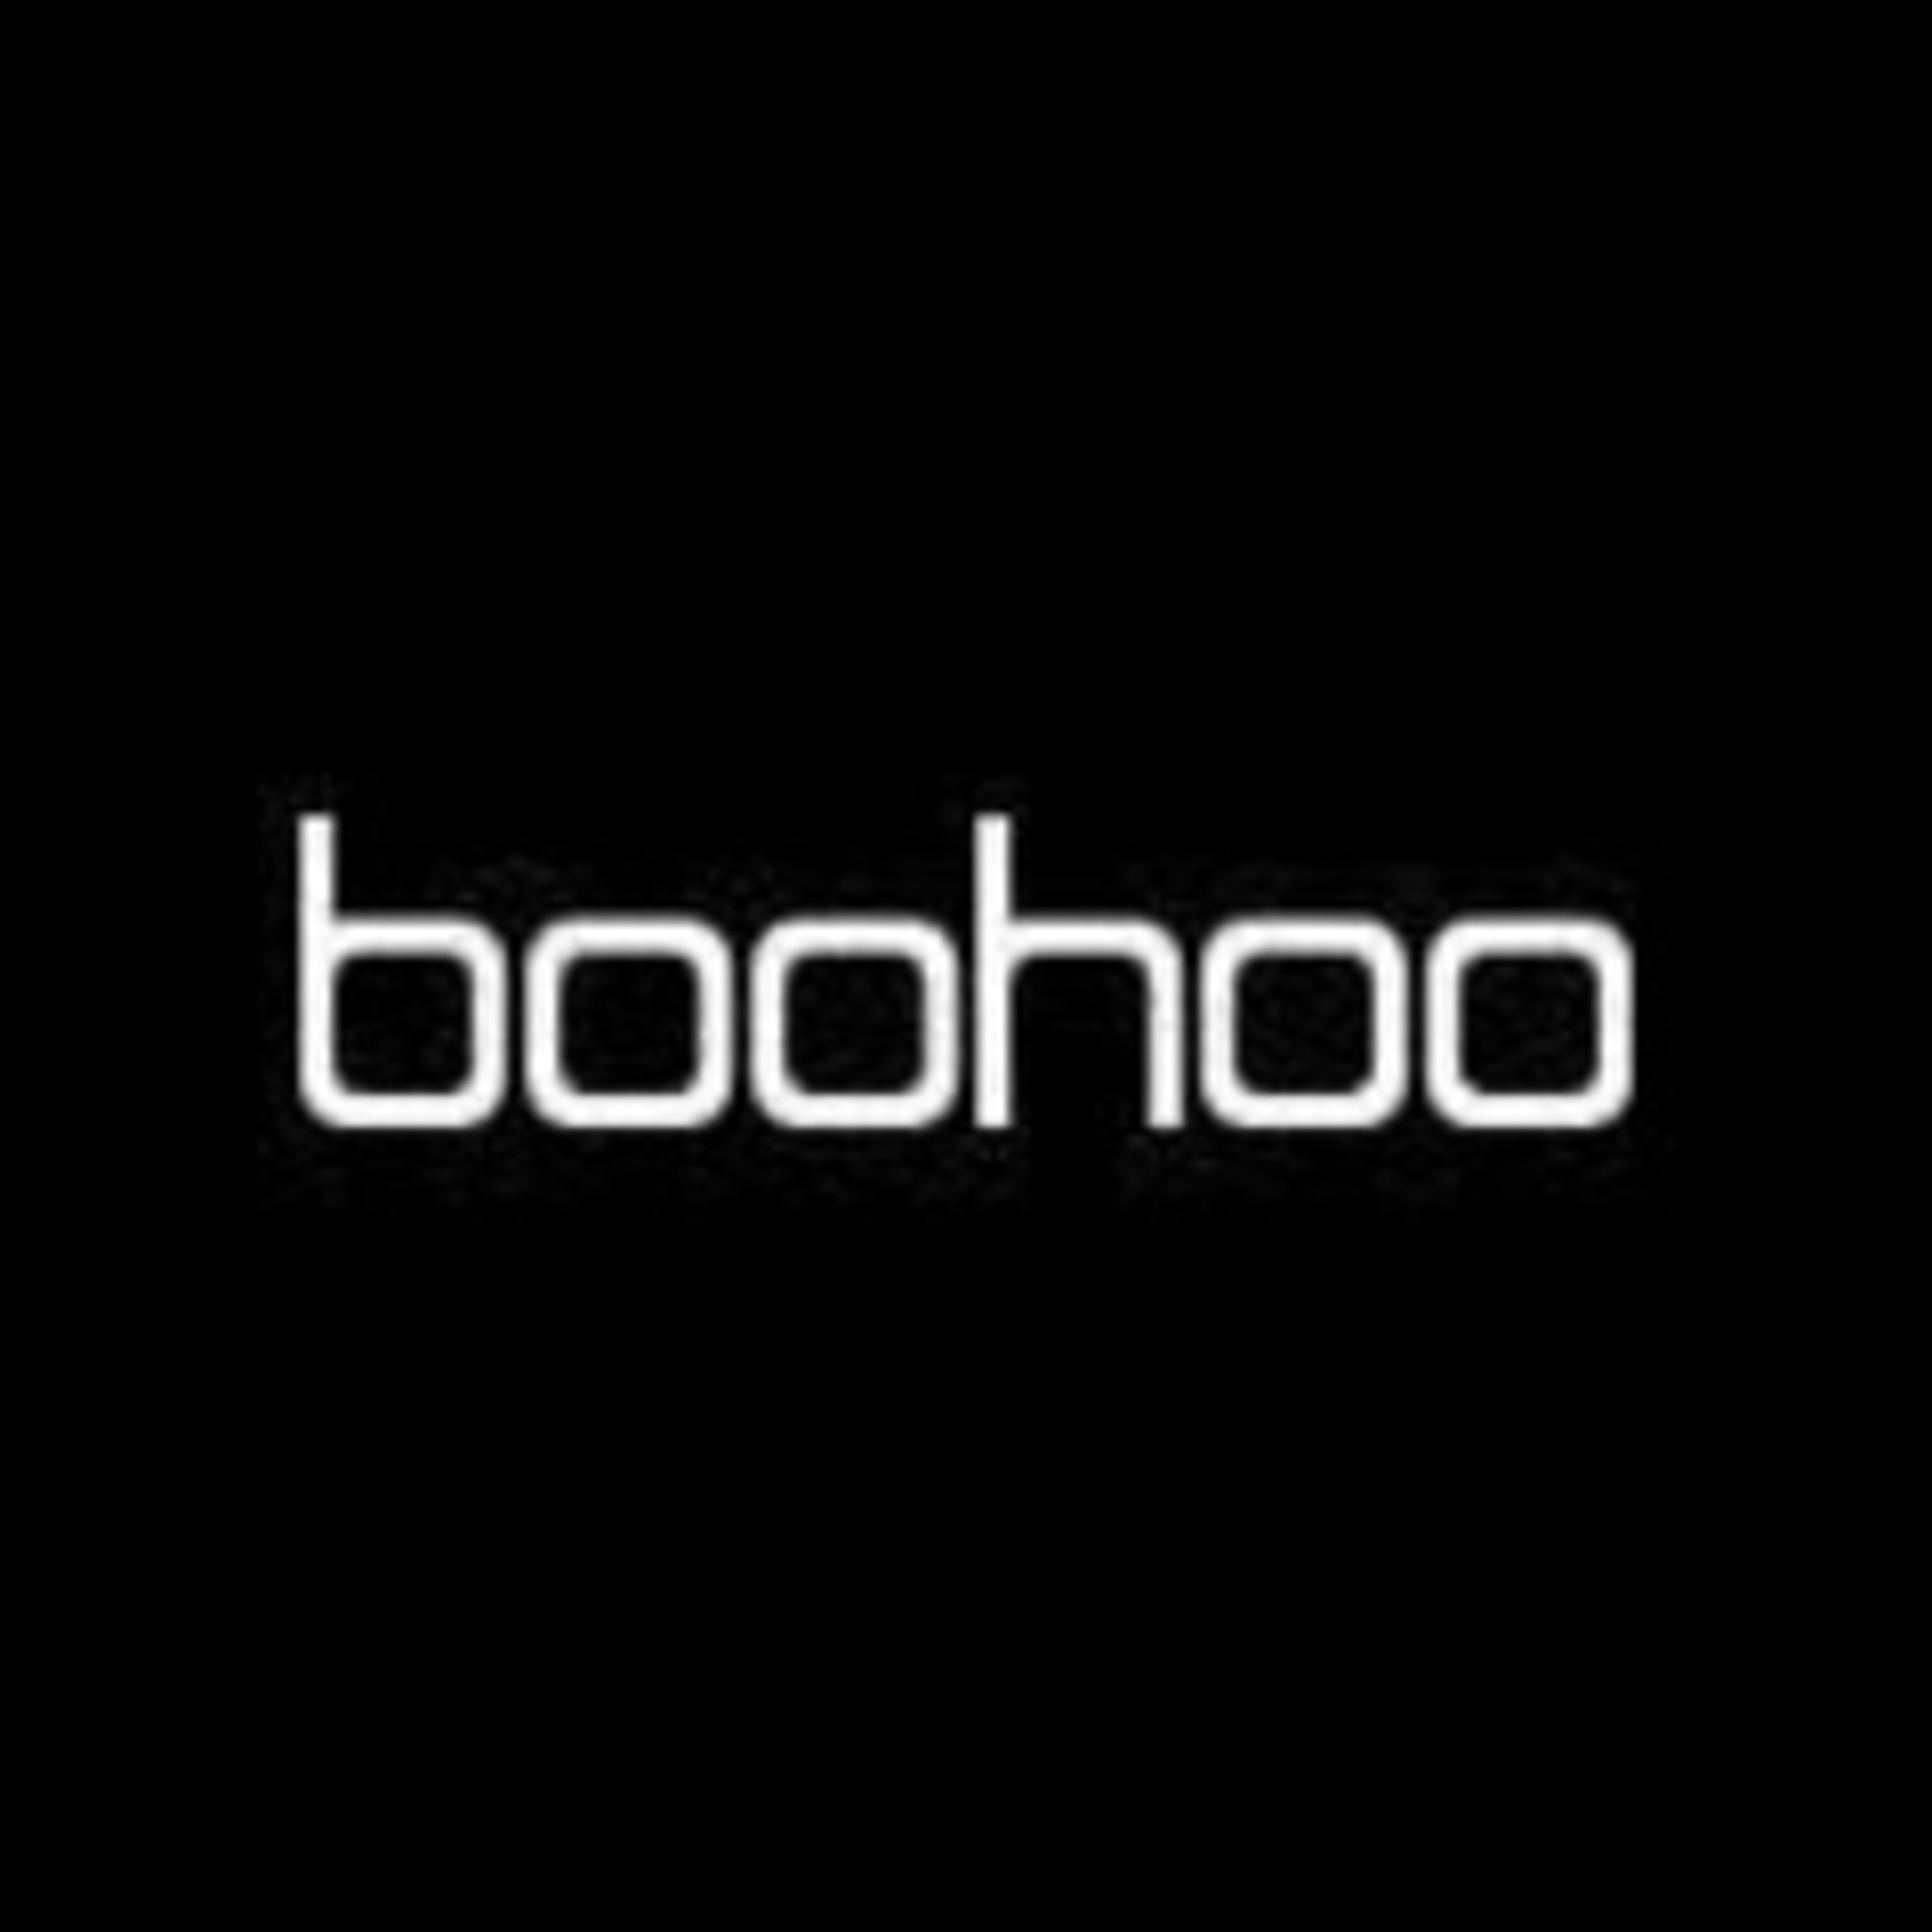 BoohooCode